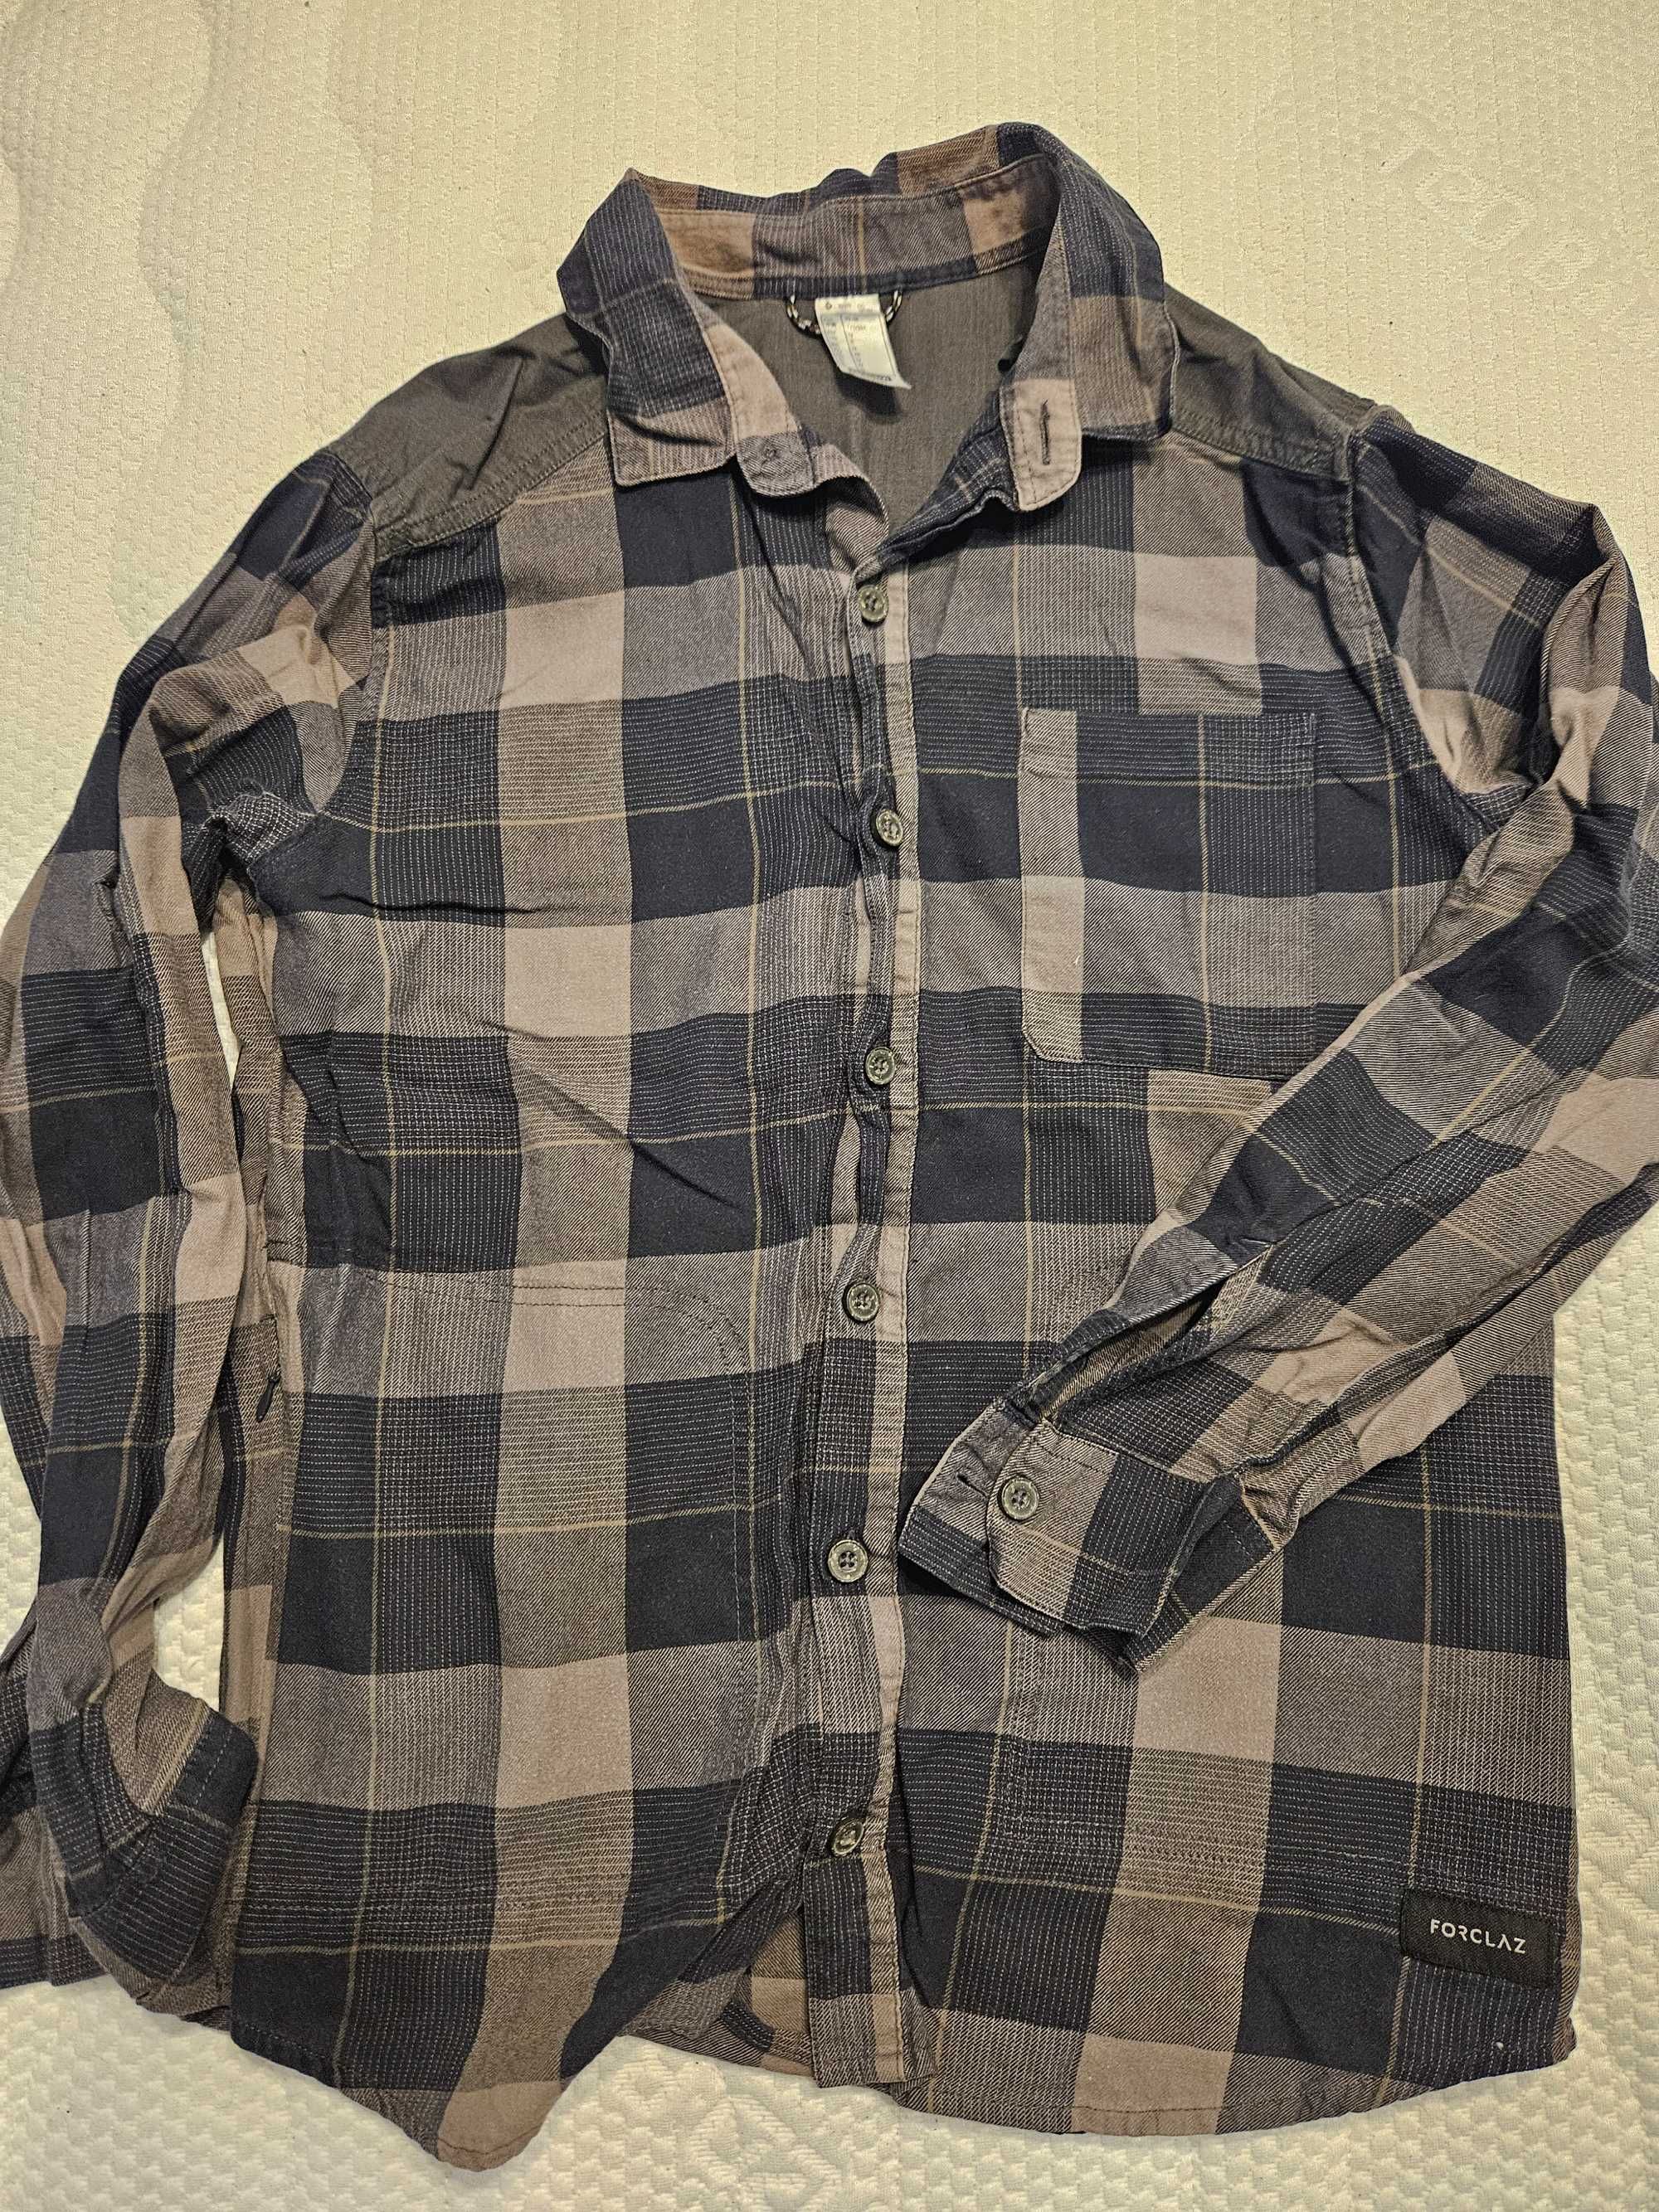 Дънкова риза - Pull & Bear
Риза - Forclaz - M размер